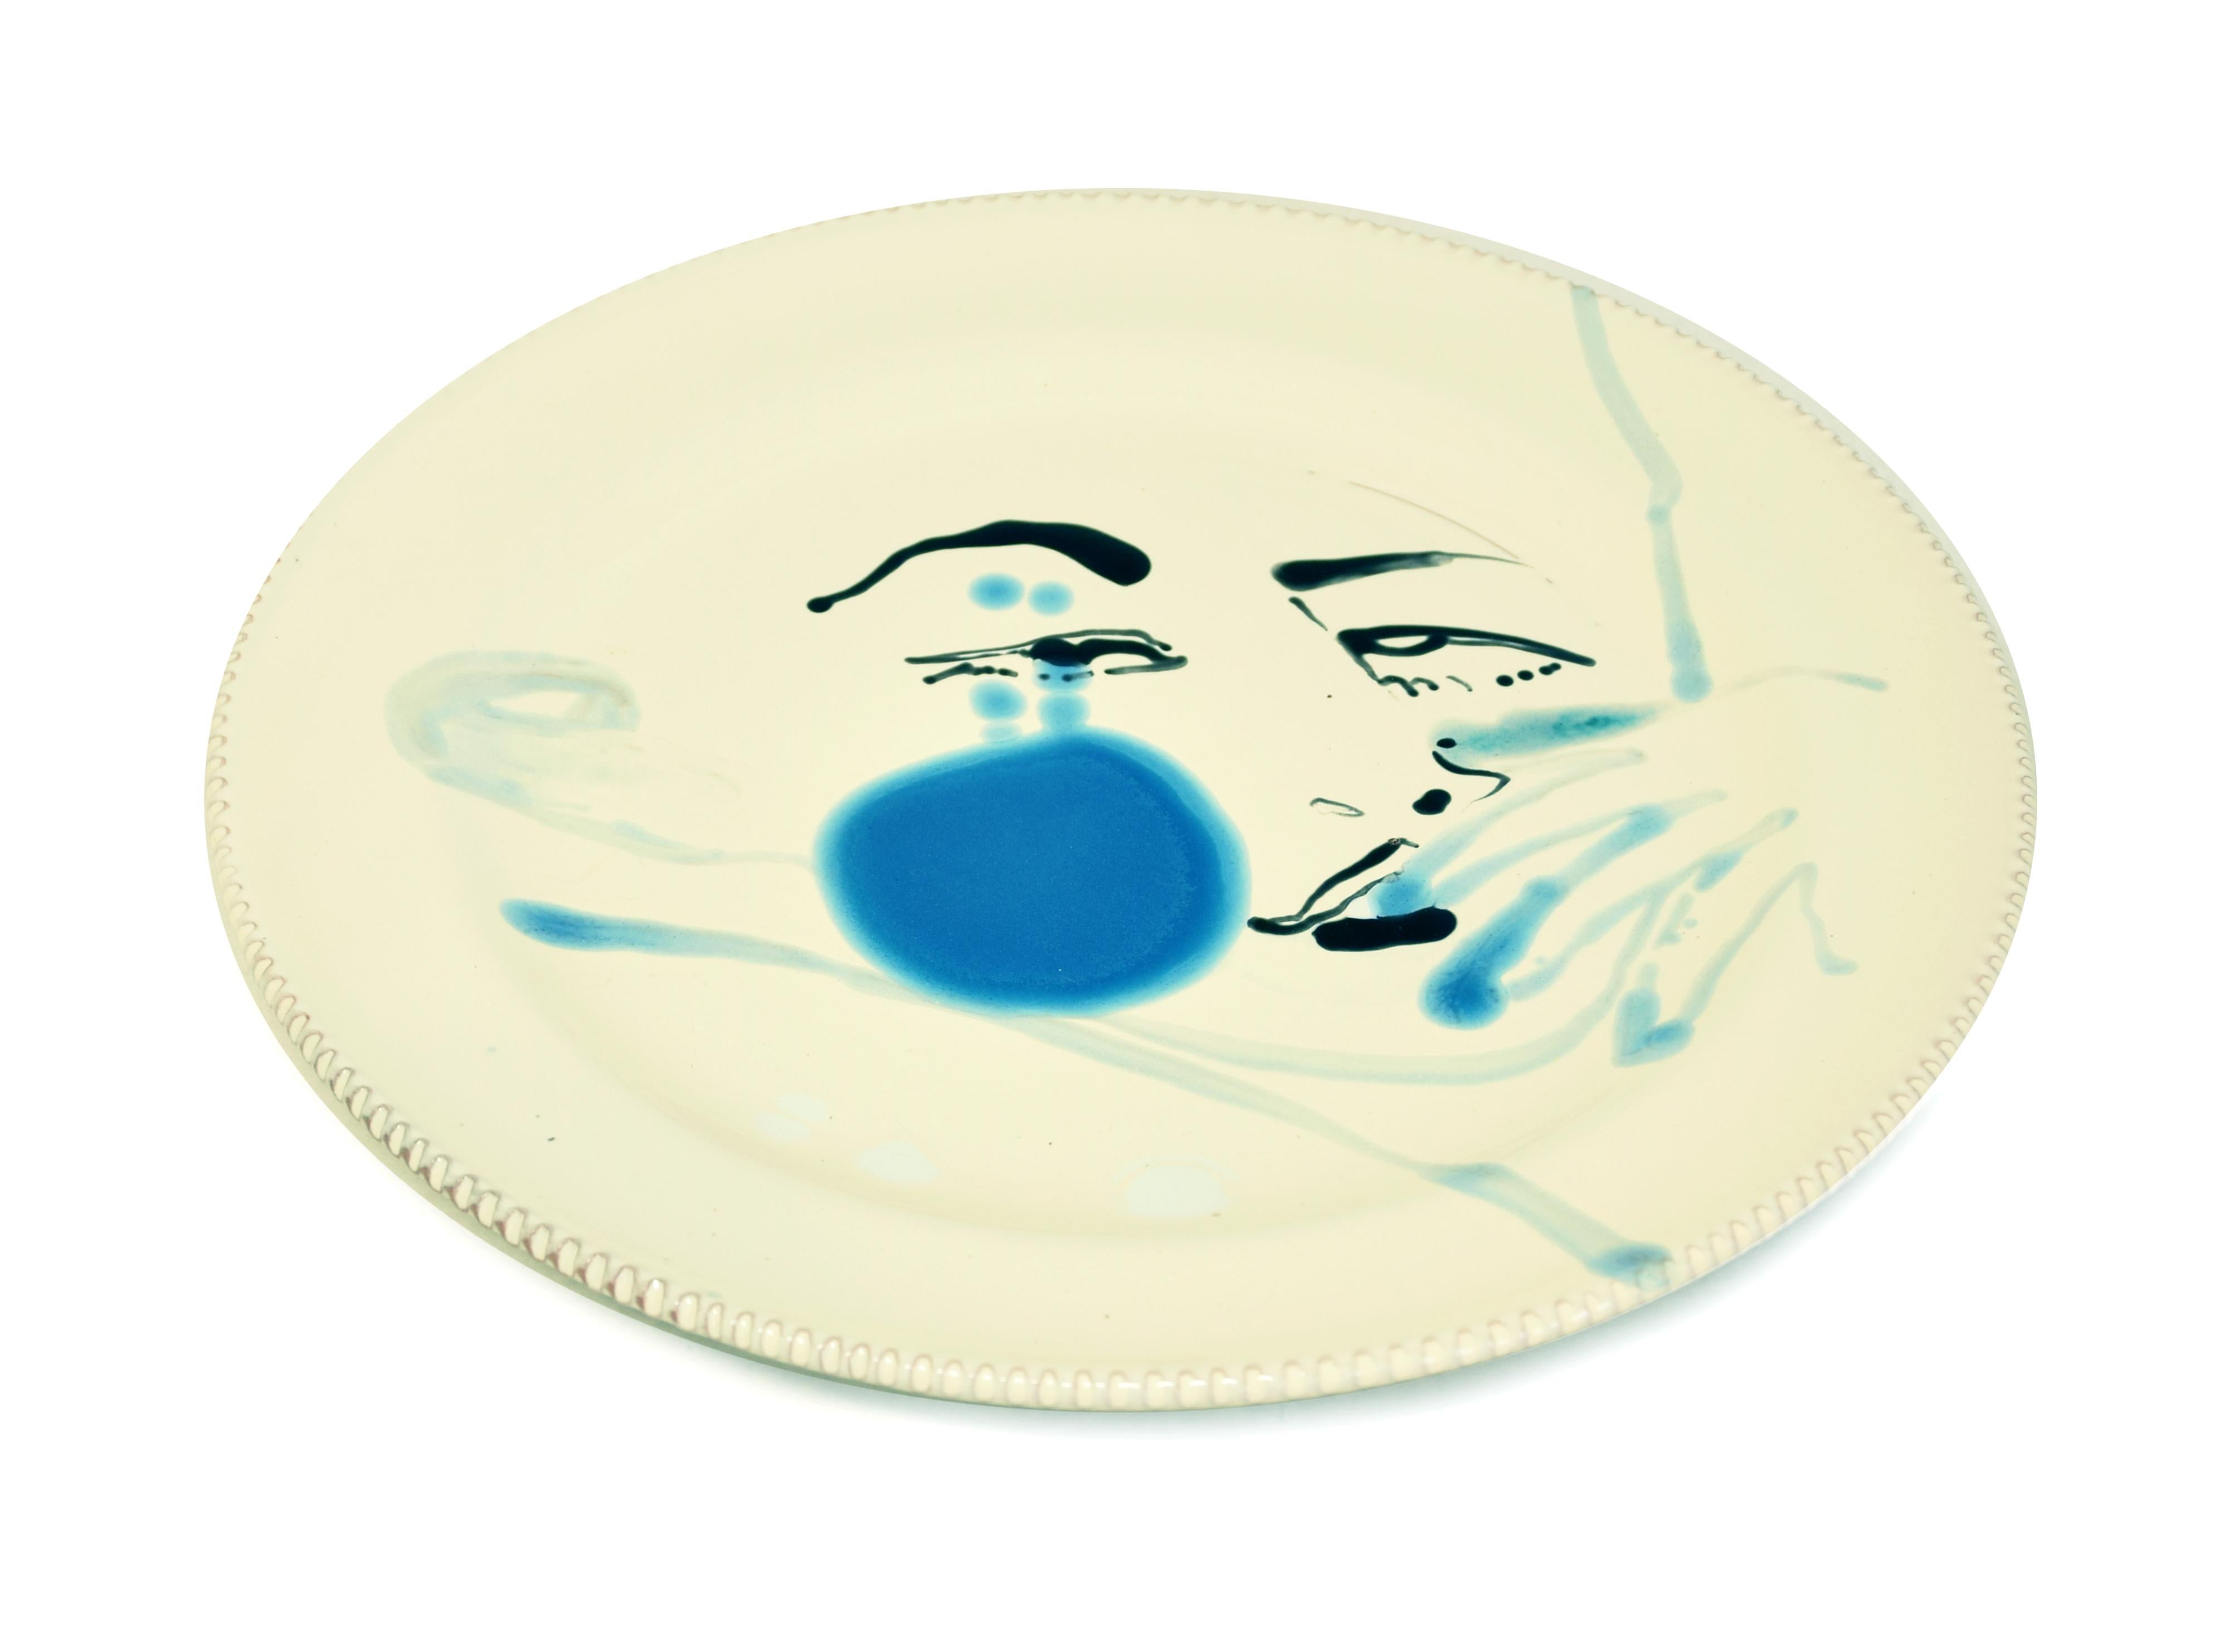 Blue Stain - Original  Hand-made Flat Ceramic Dish by A. Kurakina - 2019 - Art by Anastasia Kurakina